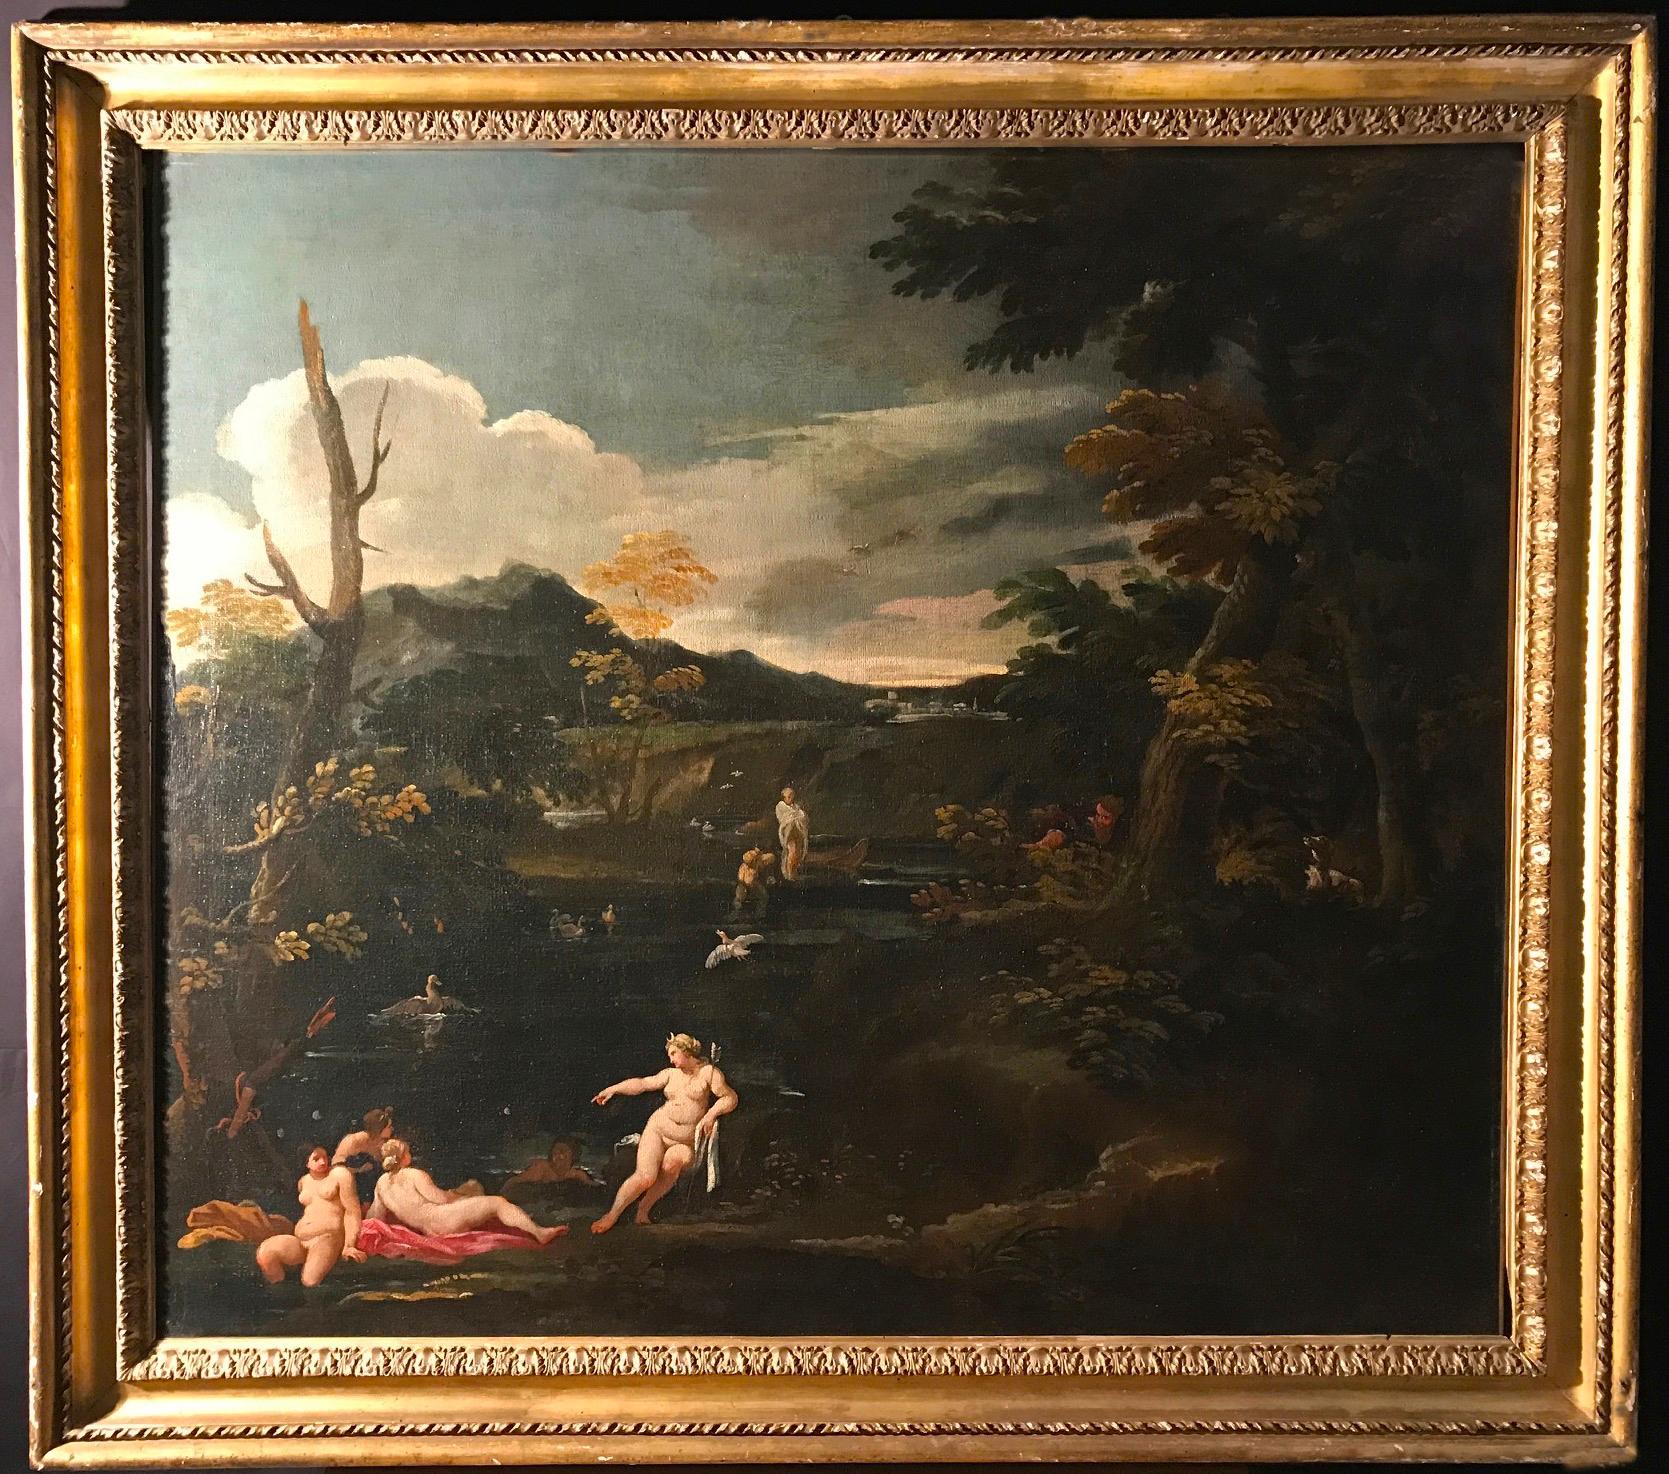 Landscape Painting Giovan Battista Viola - Importante peinture mythologique du XVIIe siècle Diane et actrice, huile sur toile 